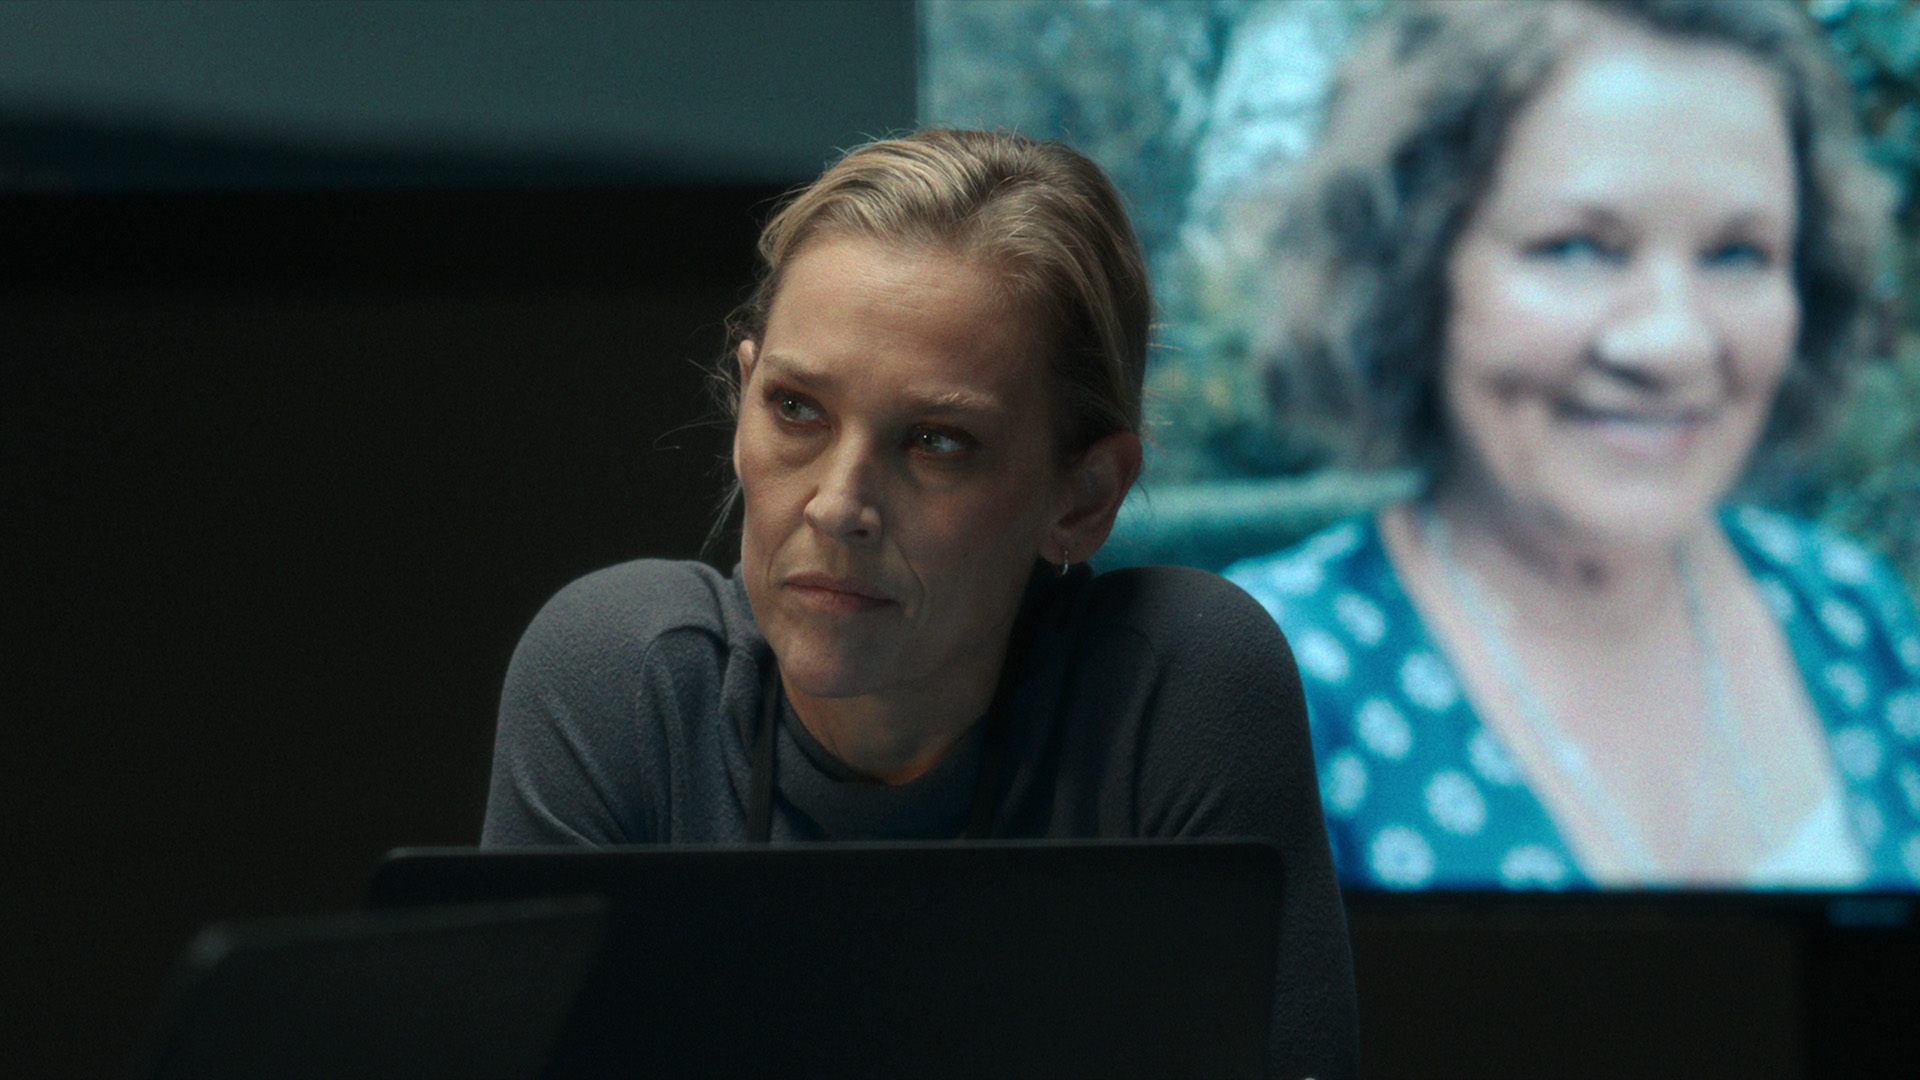 Un thriller basado en un caso real ocurrido en Noruega crédito: Netflix